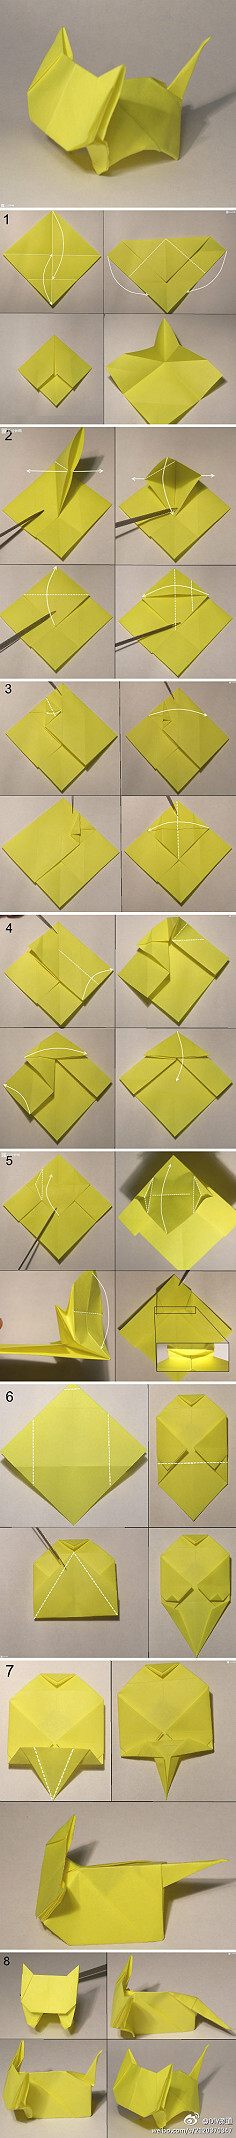 折纸教程# 【可爱小猫折纸】 是不是很口